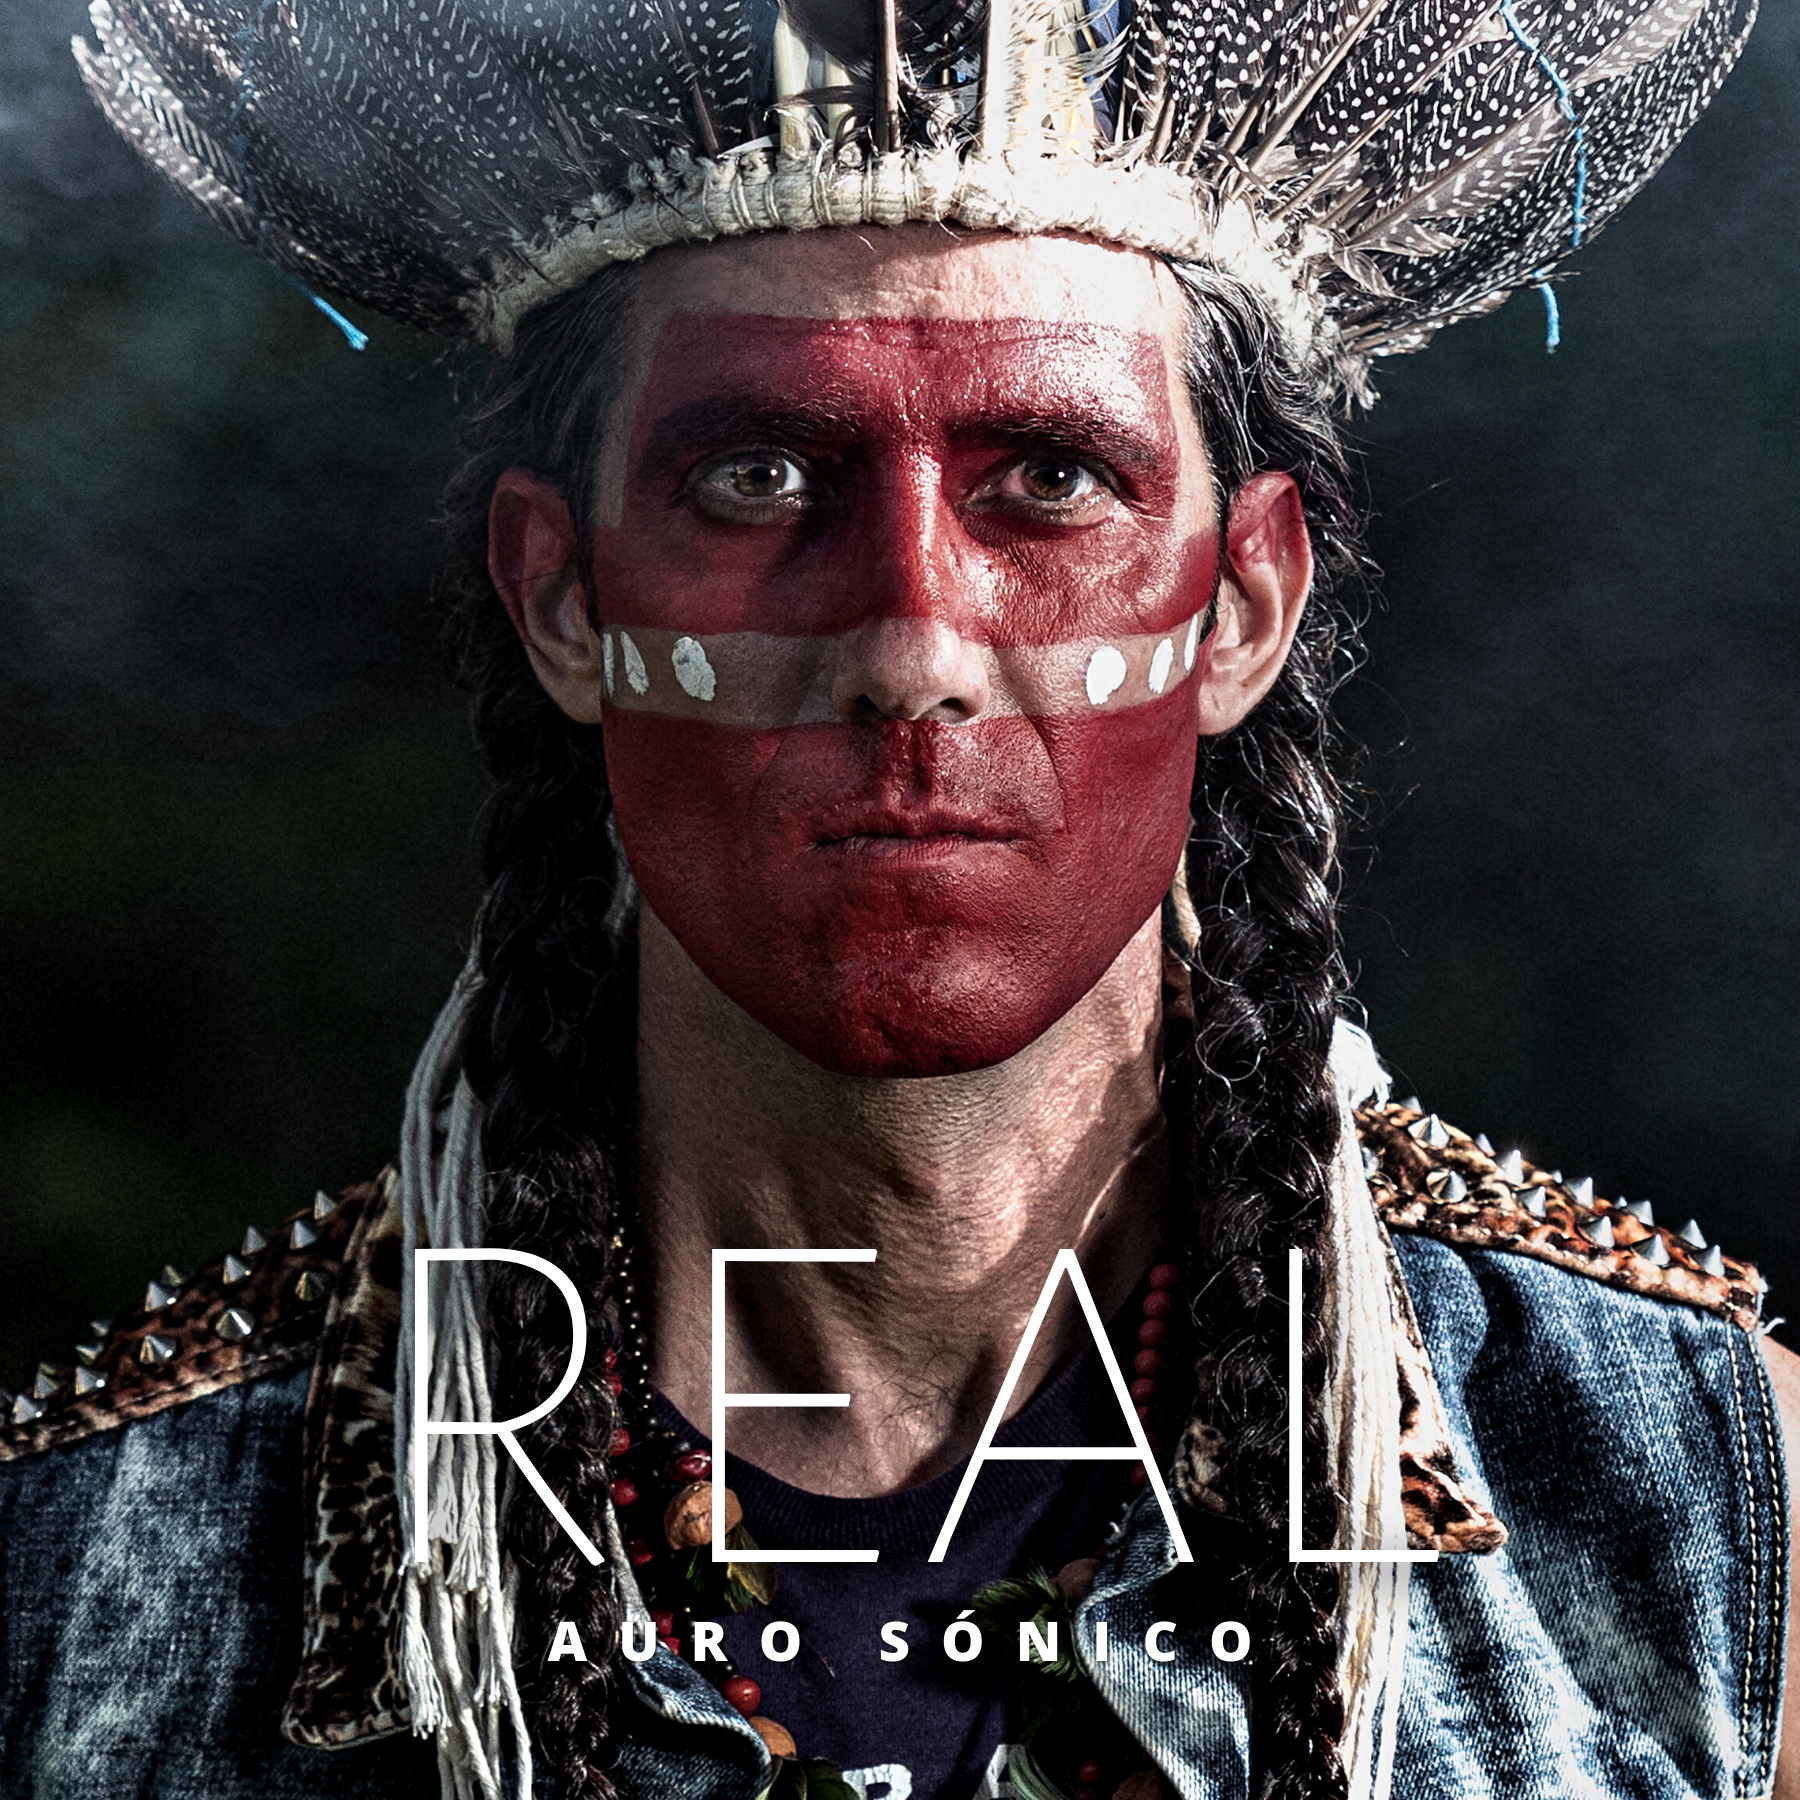 Auro Sónico presenta su nuevo sencillo “Real”